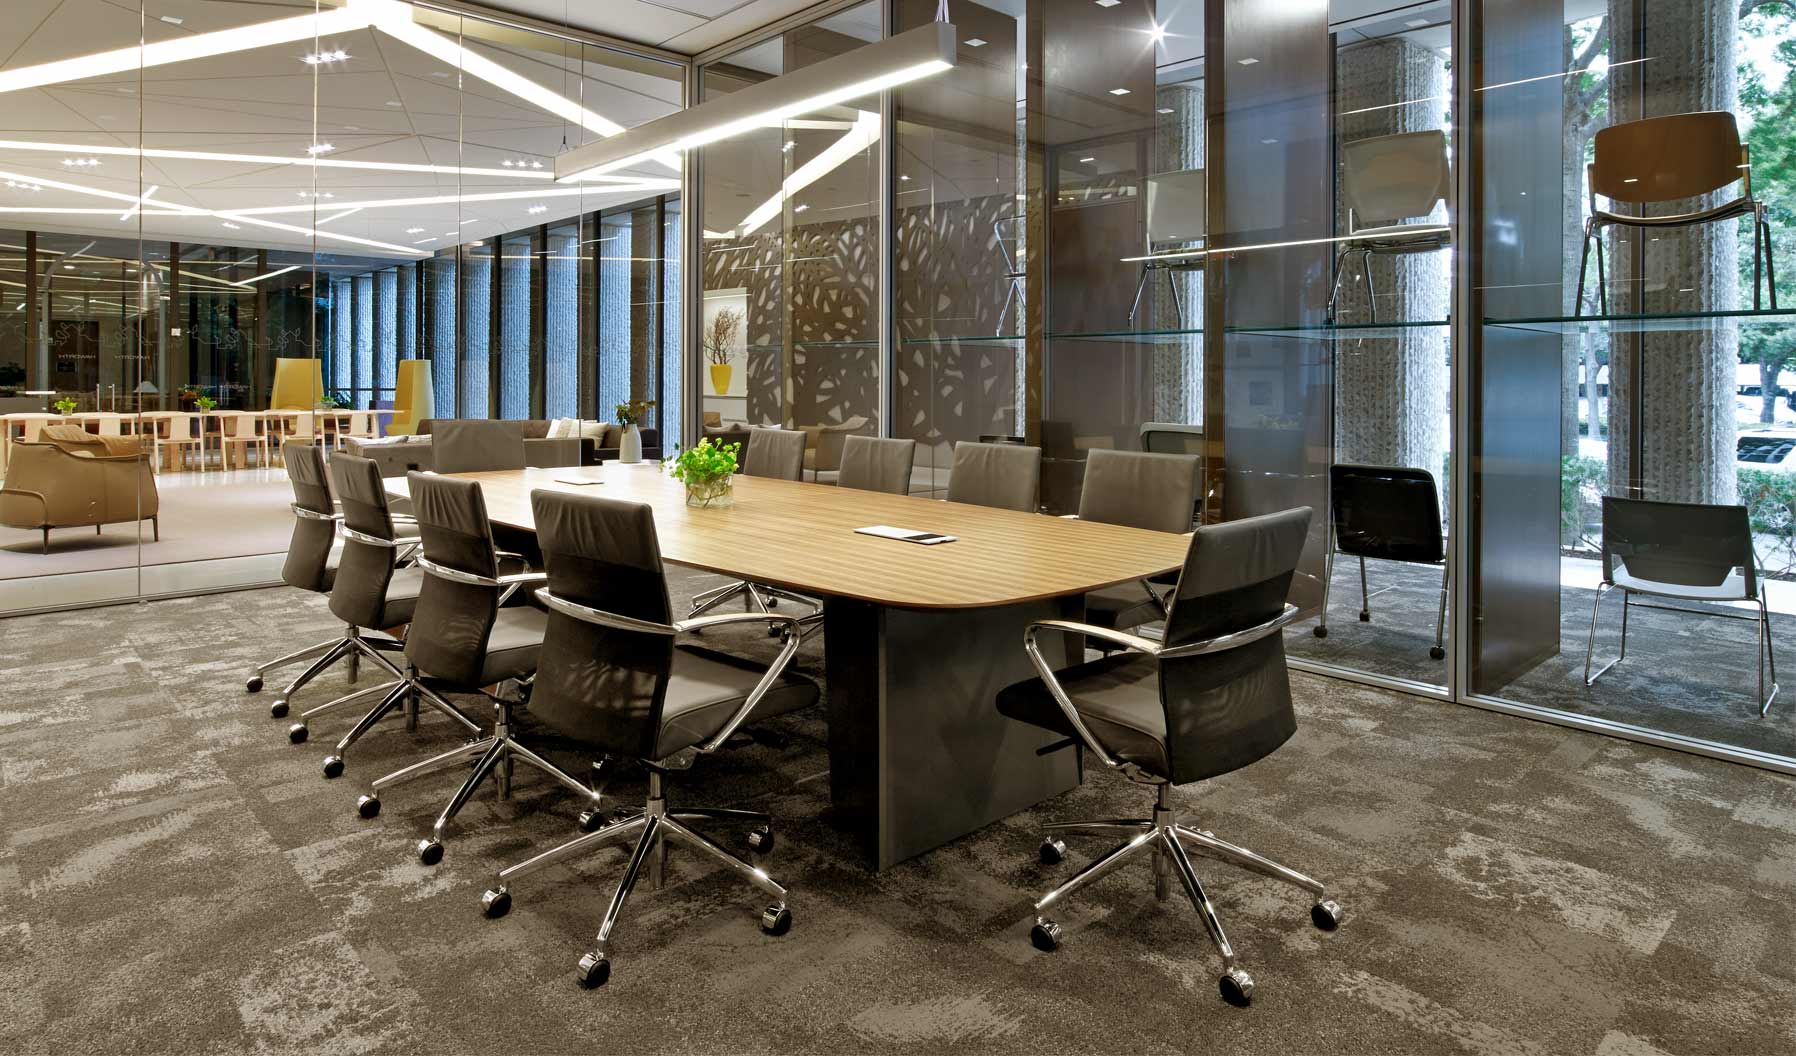 这一会议空间支持协作，在工作场所营造出温暖温馨的文化。这片空间拥有良好的自然光线，而毗邻休闲椅和从地板到天花板的座椅布置更添层次。